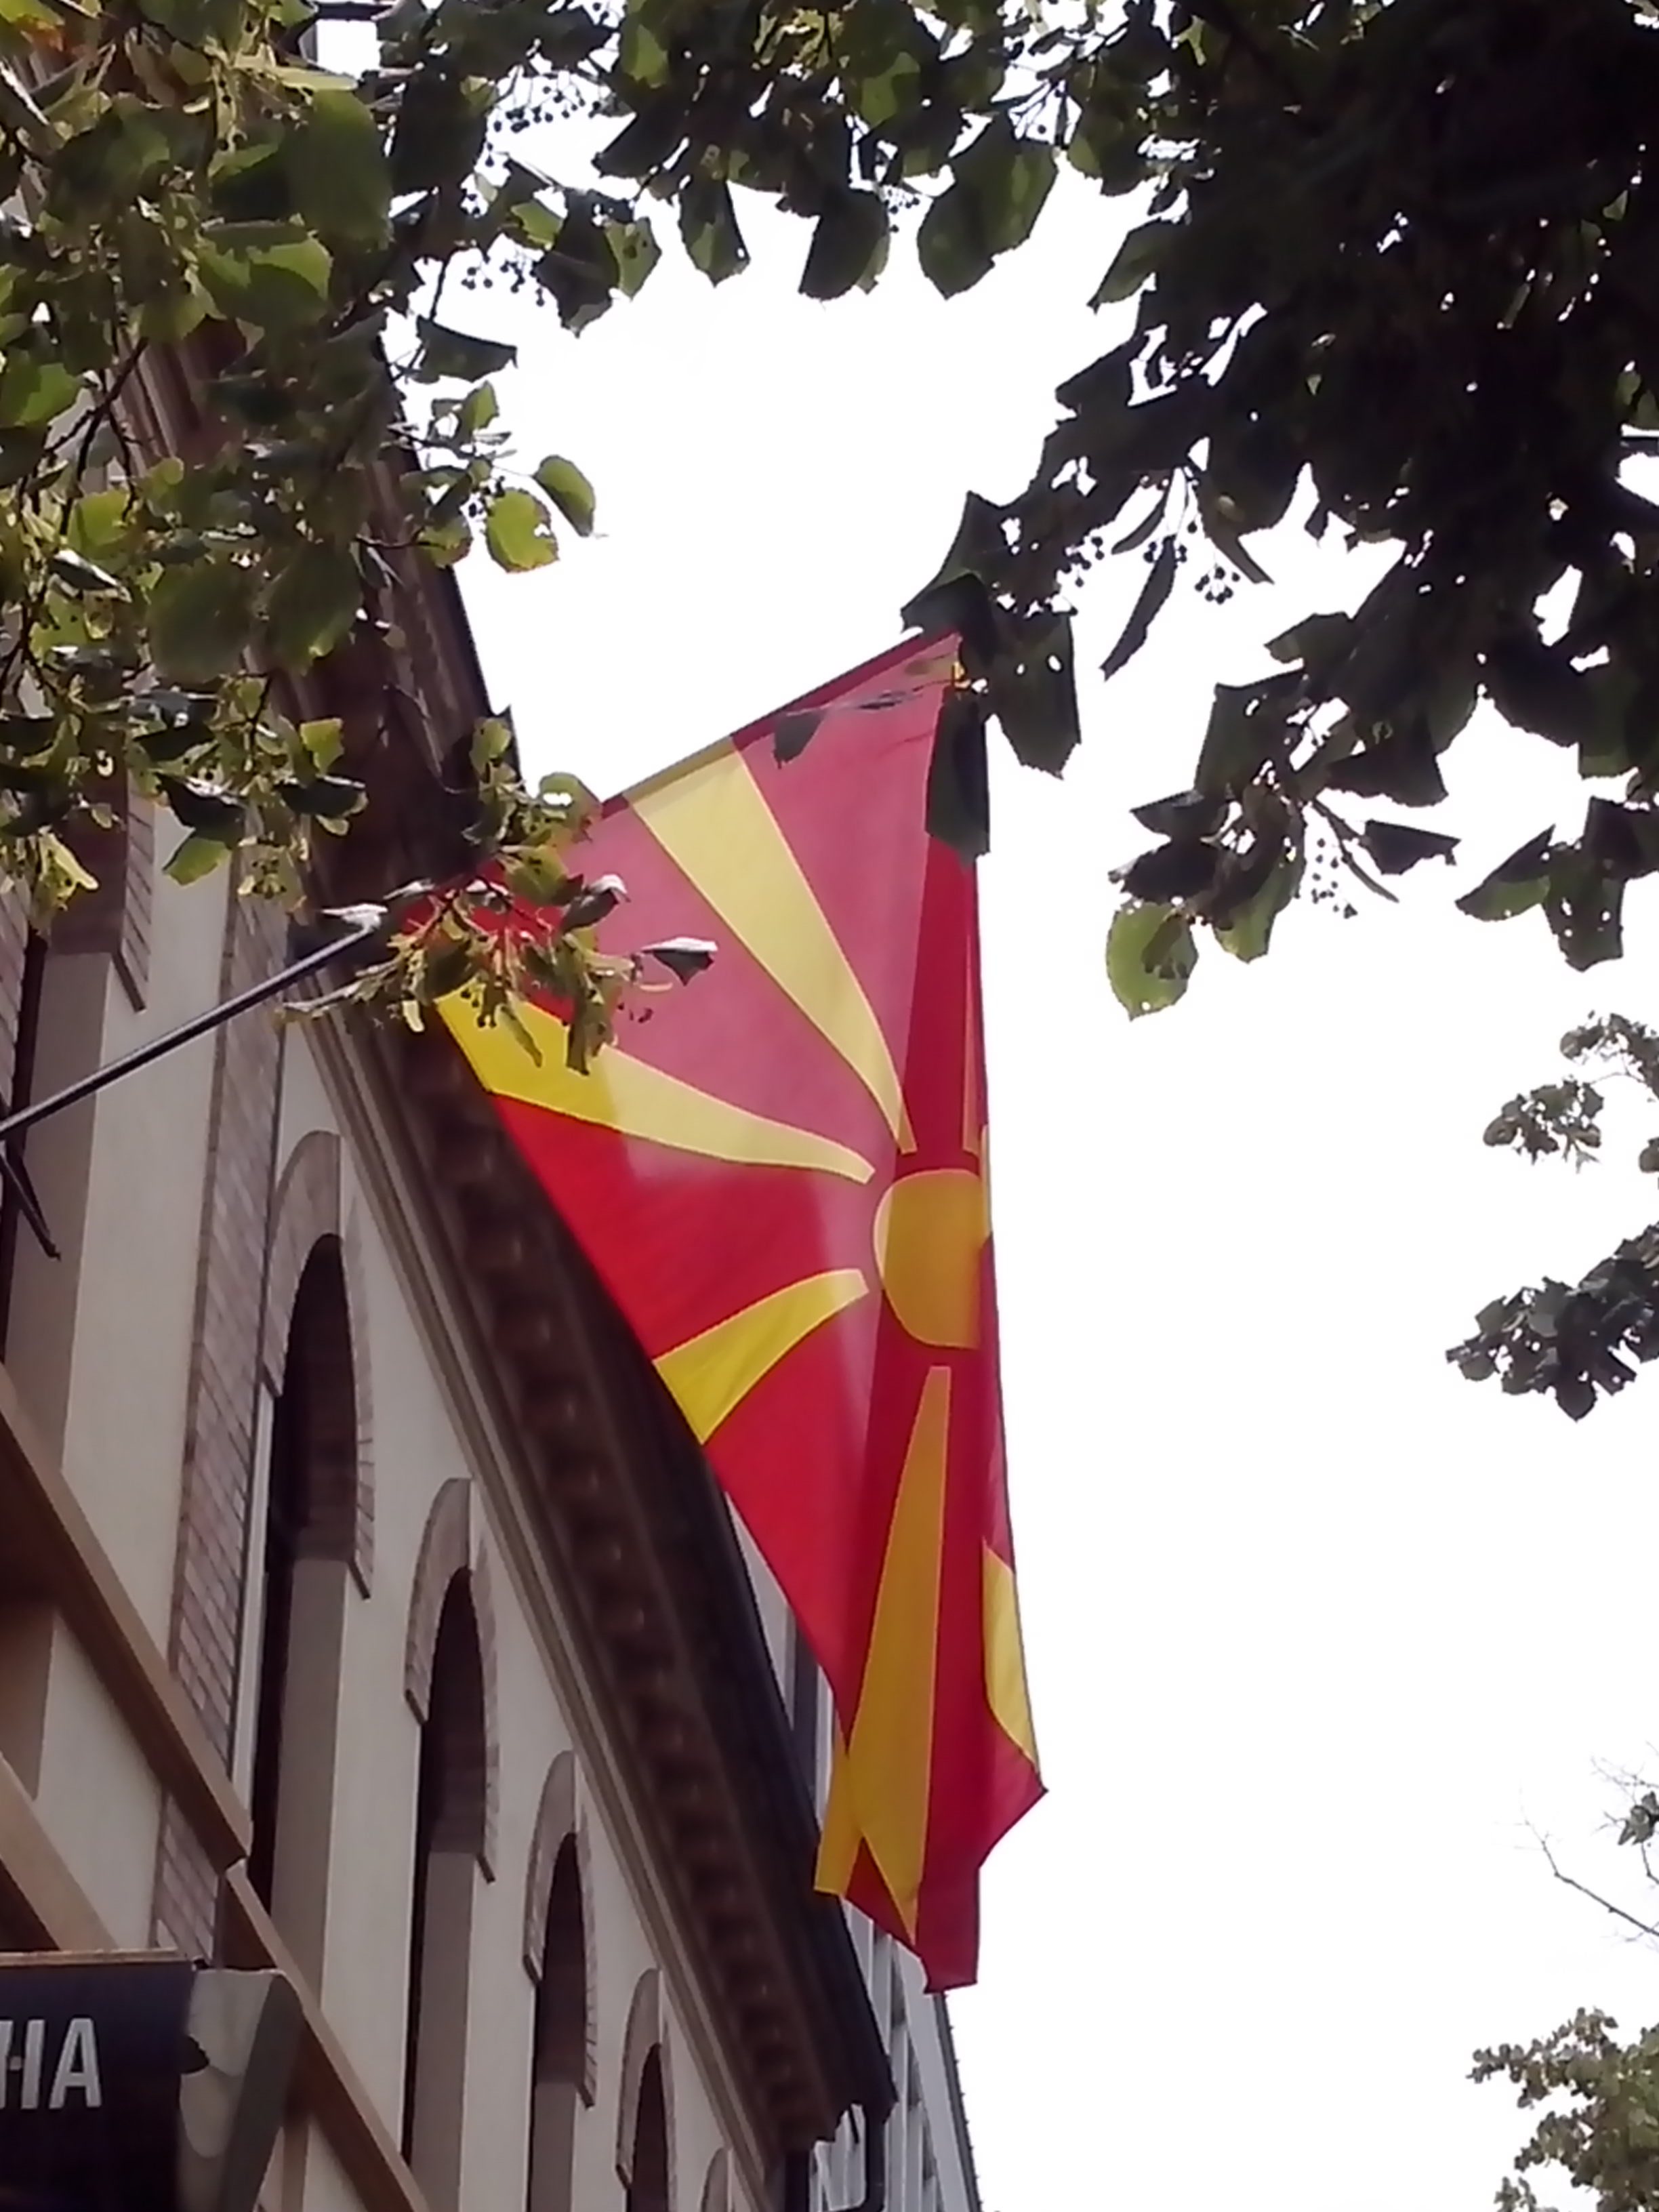  Na stavbikonzulata plapola makedonska zastava